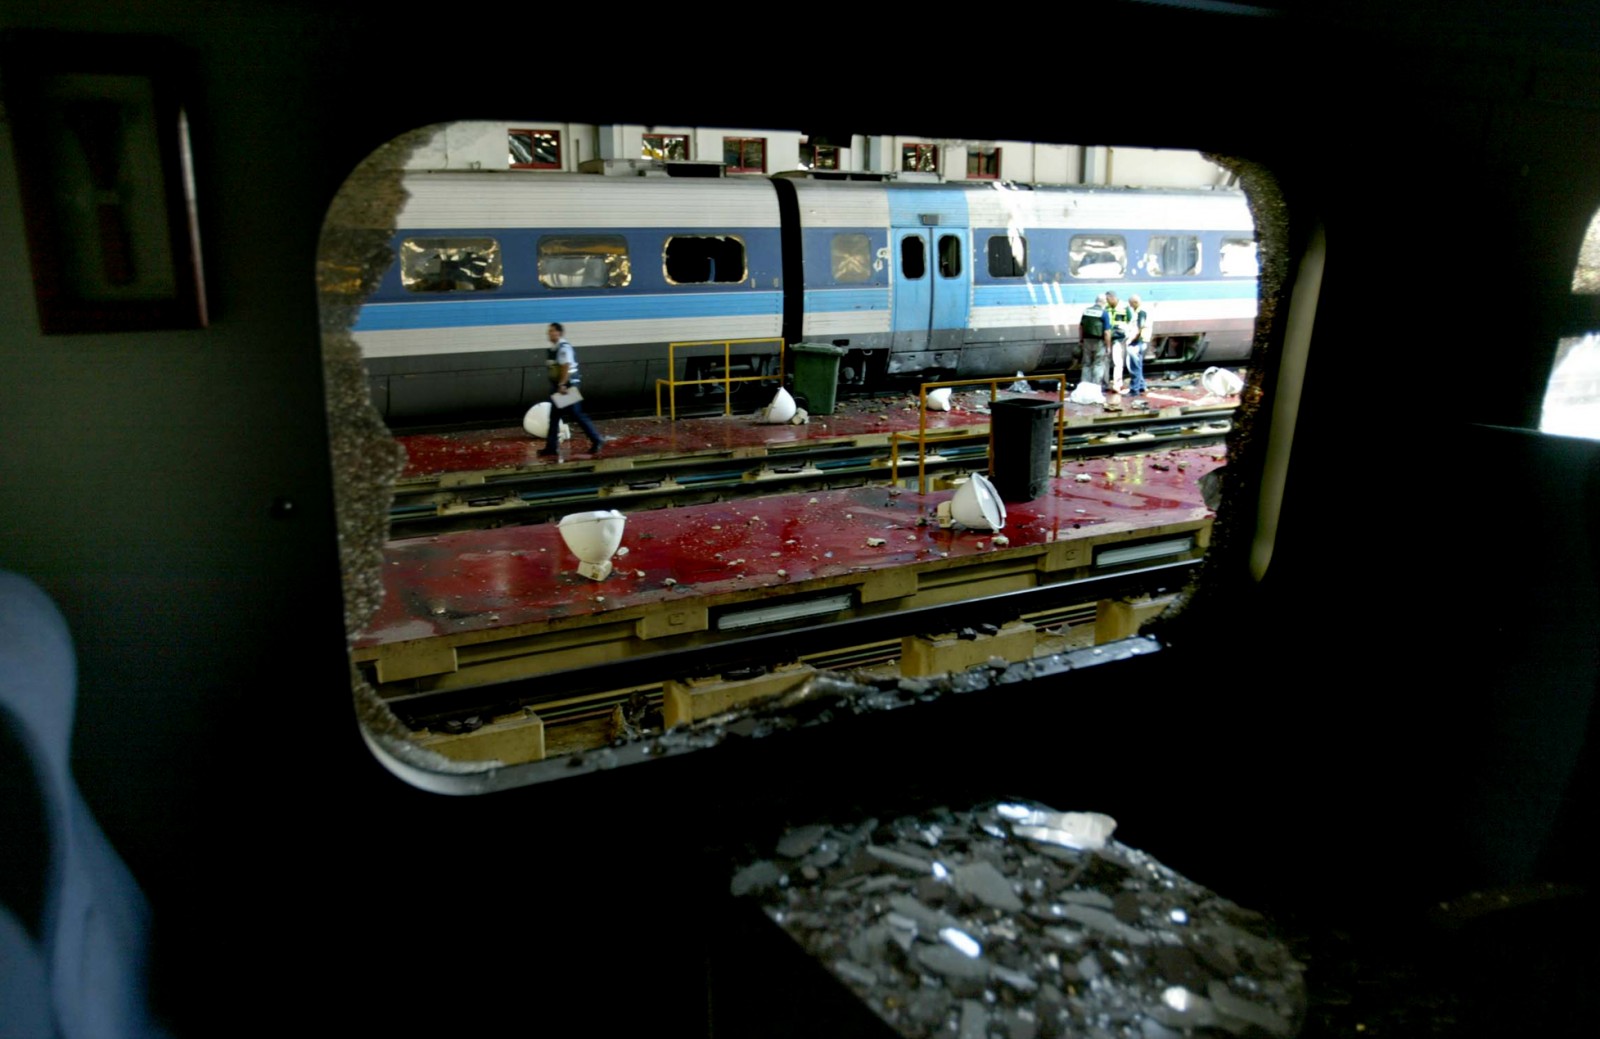 תחנת הרכבת בחיפה בה נהרגו שמונה עובדים 16 ביולי 2006. צילום: פייר טרדג'מן, פלאש 90.